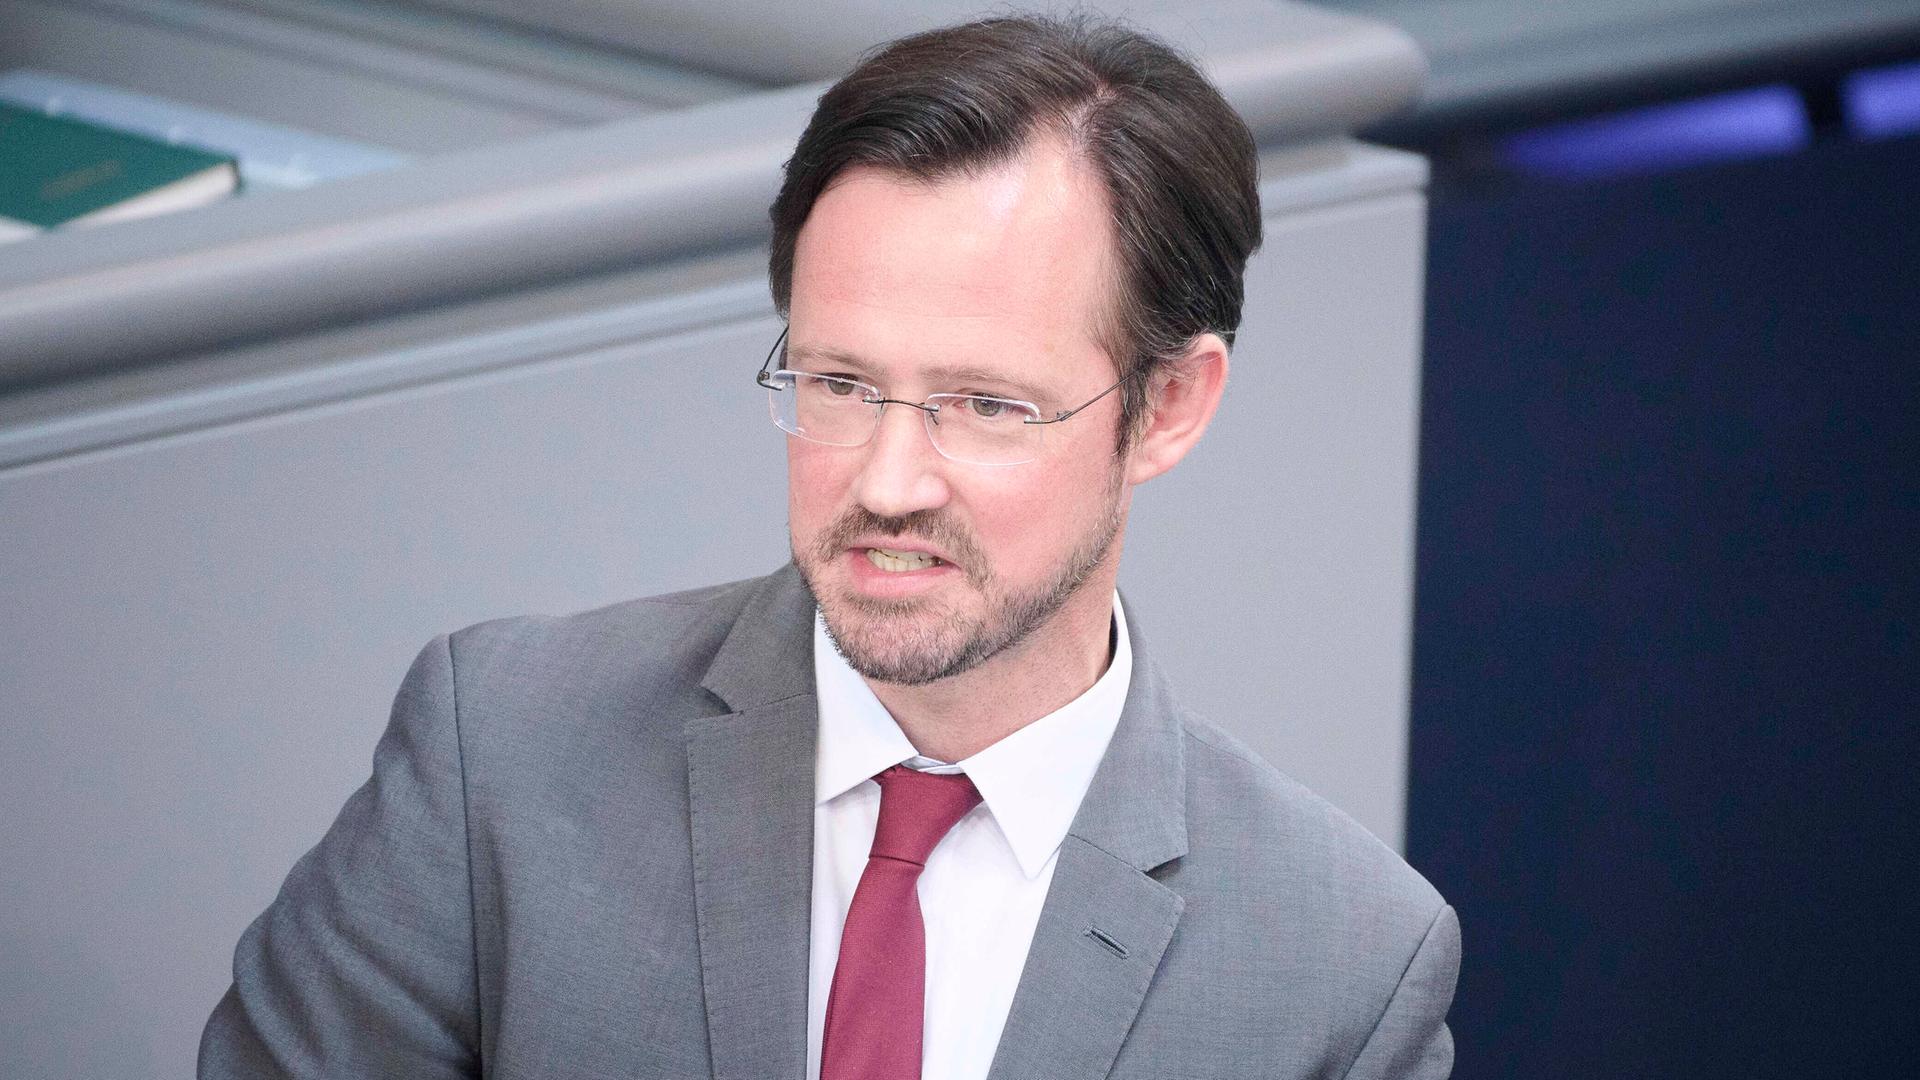 Der SPD-Politiker Dirk Wiese im Porträt